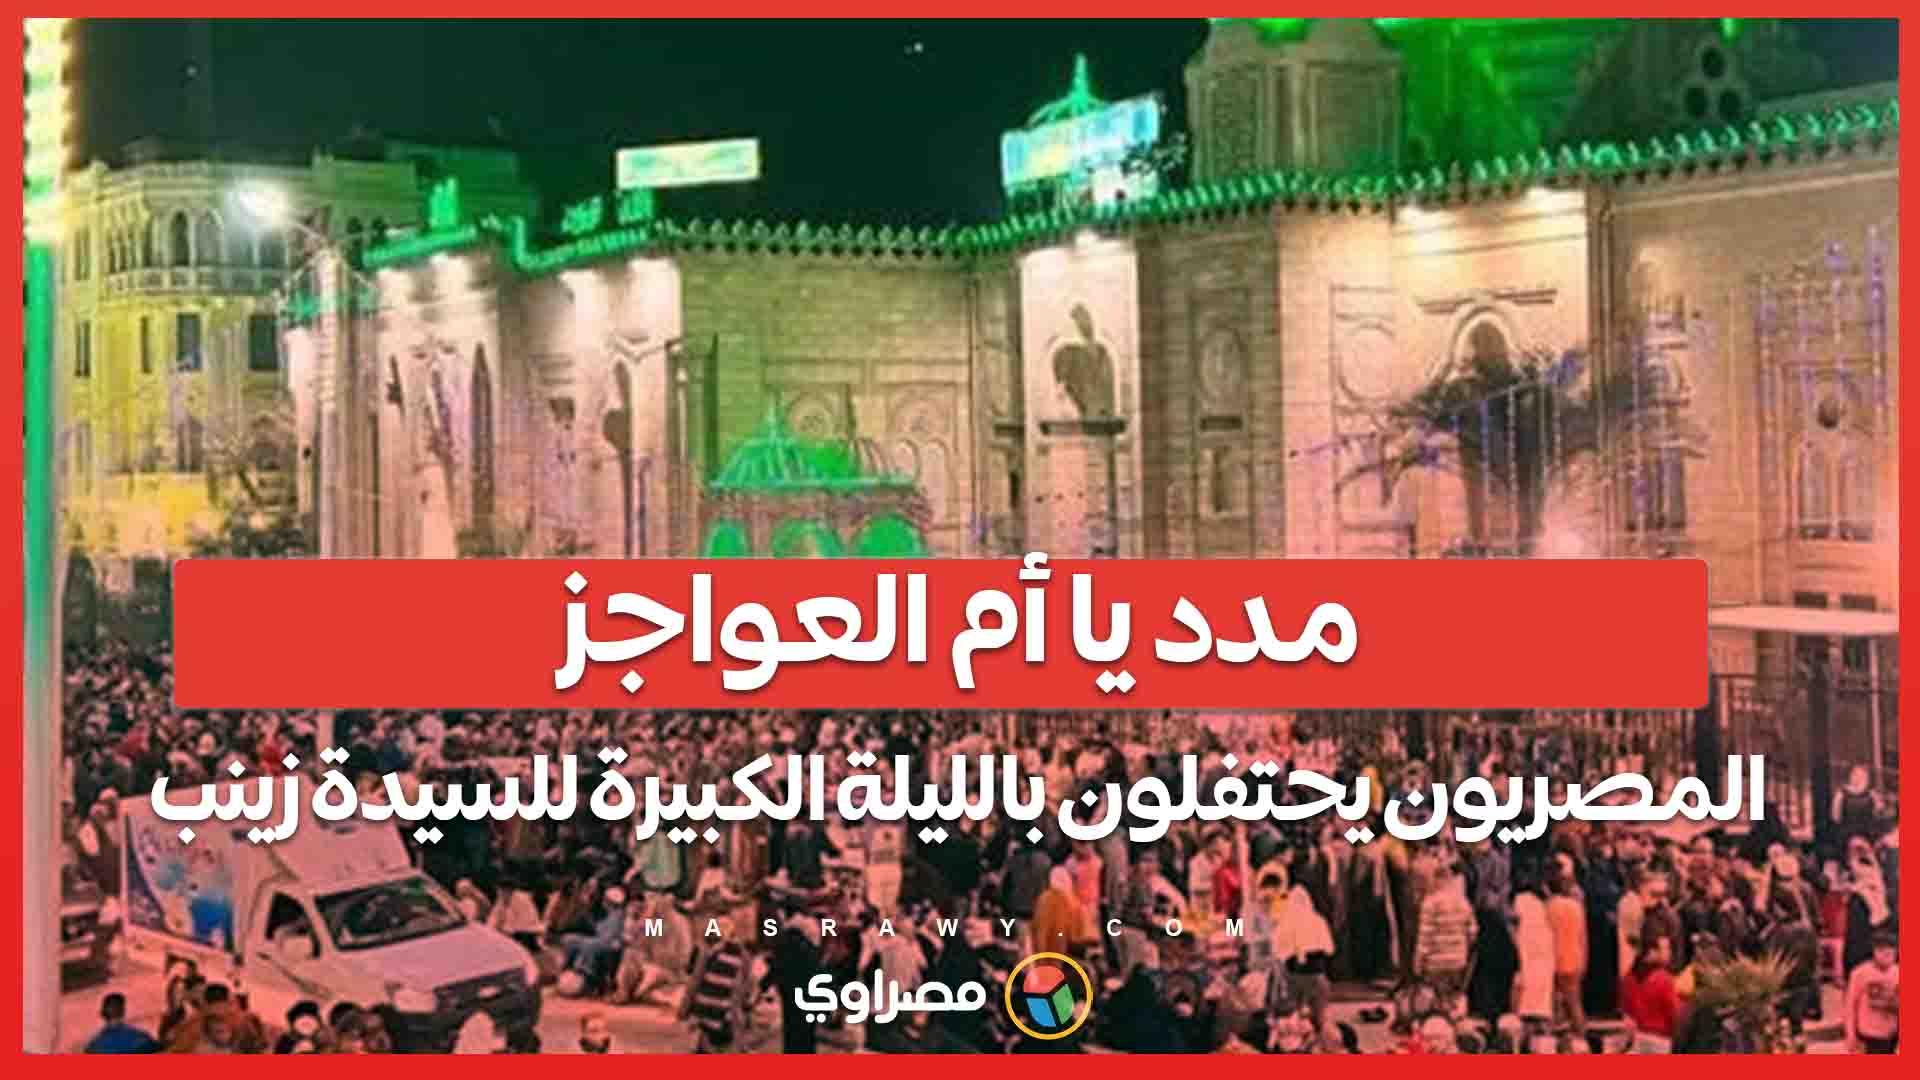 مدد يا أم العواجز المصريون يحتفلون بالليلة الكبير